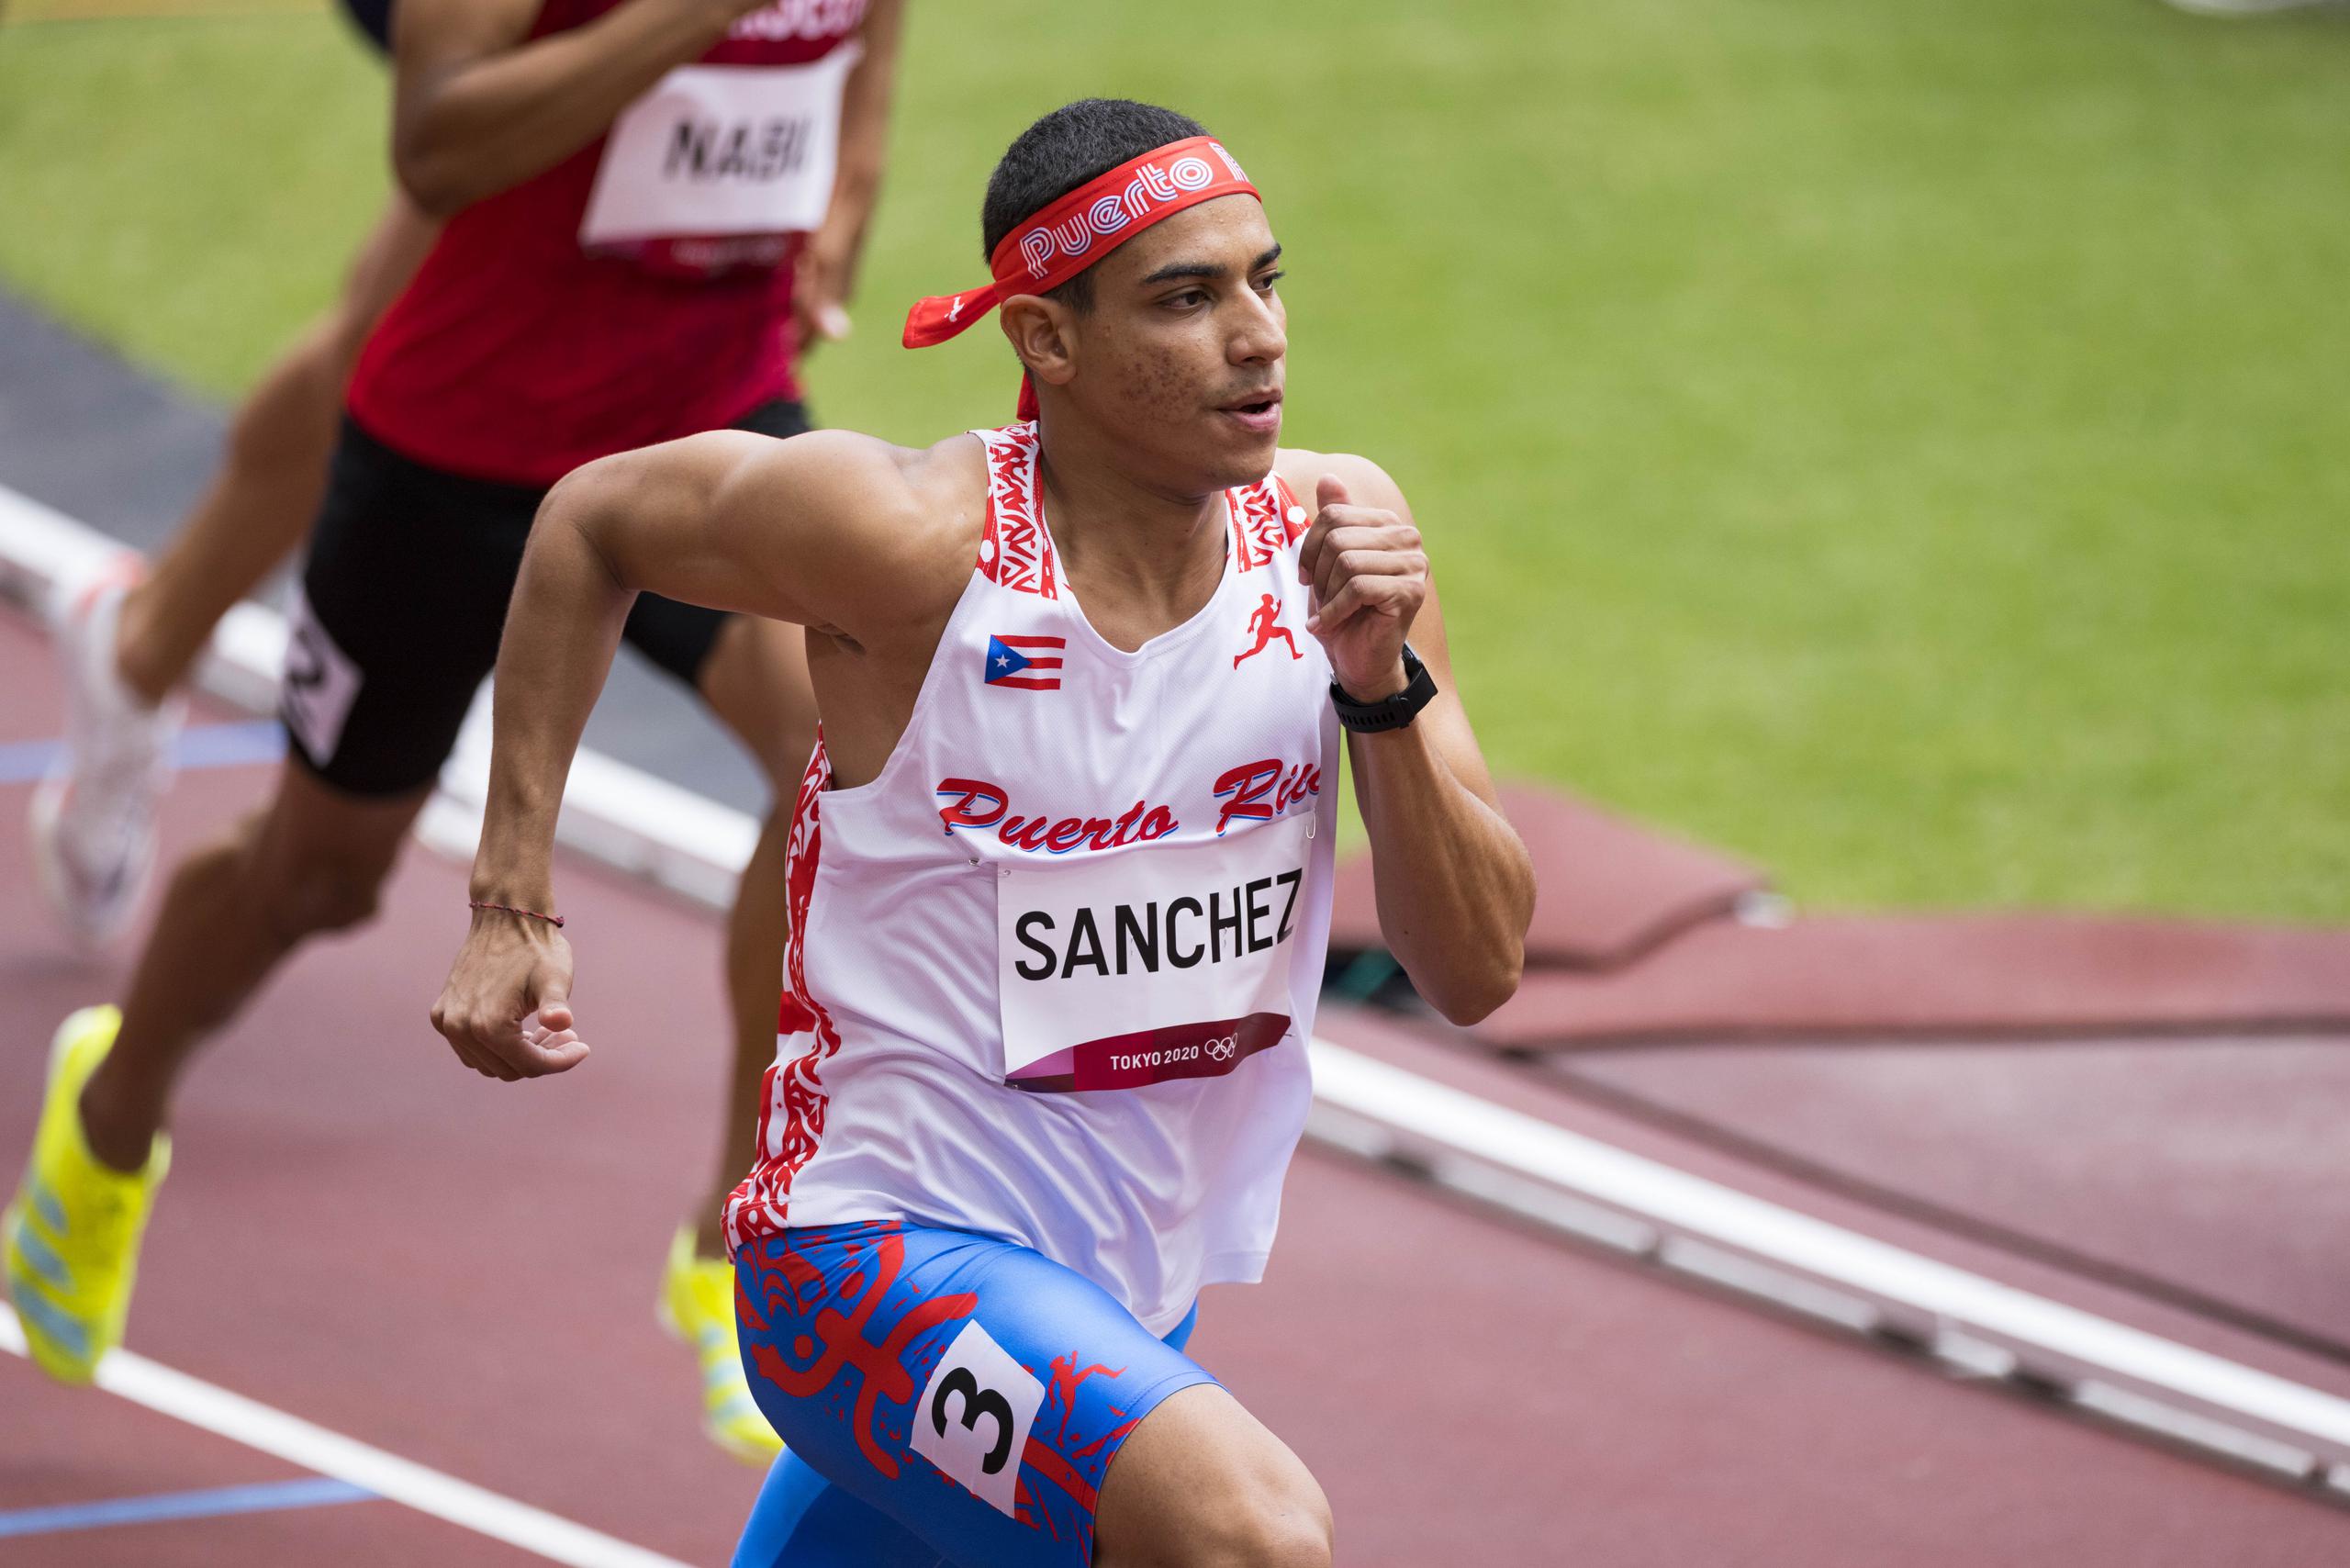  Ryan Sánchez ganó la medalla de oro en 800 metros del pasado Campeonato Panamericano U20 en el 2017 en Trujillo, Perú. Posteriormente, en el 2019 ganó la medalla de bronce en los Juegos Panamericanos Lima 2019.